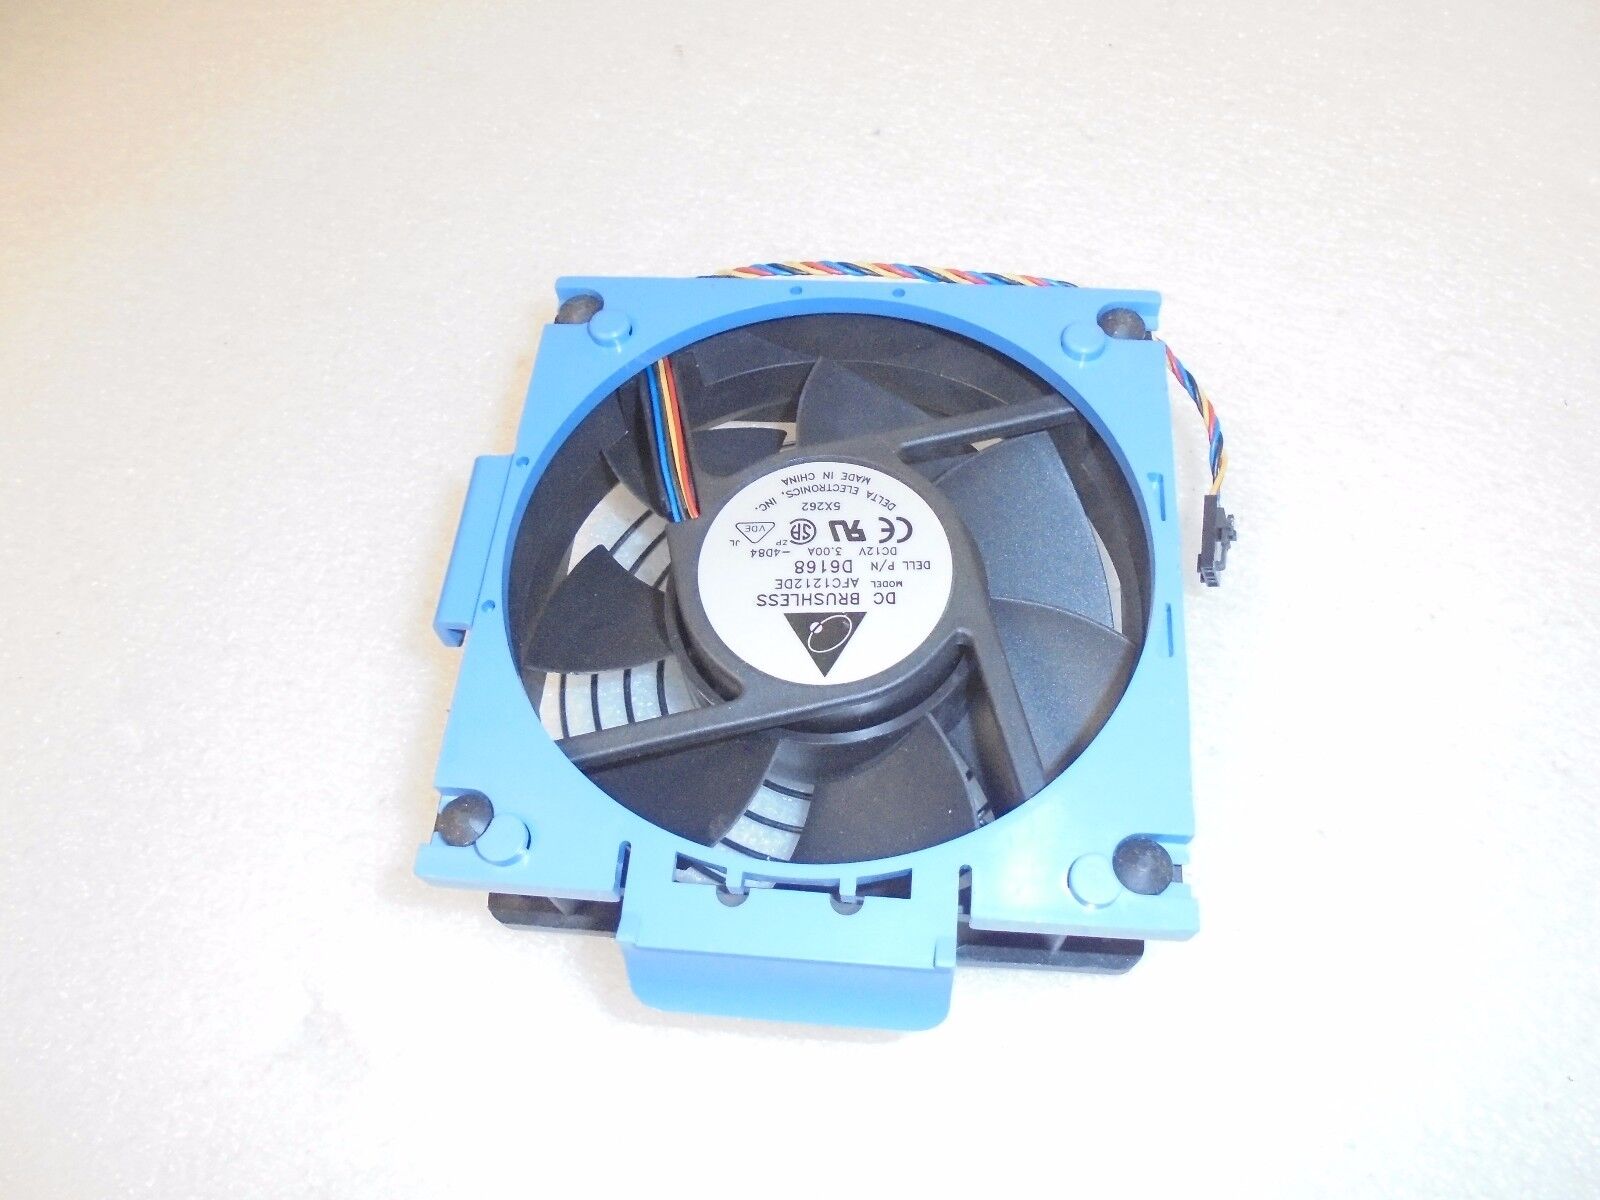  Original  OEM DELL PowerEdge 850 Rear Fan Case X8955  